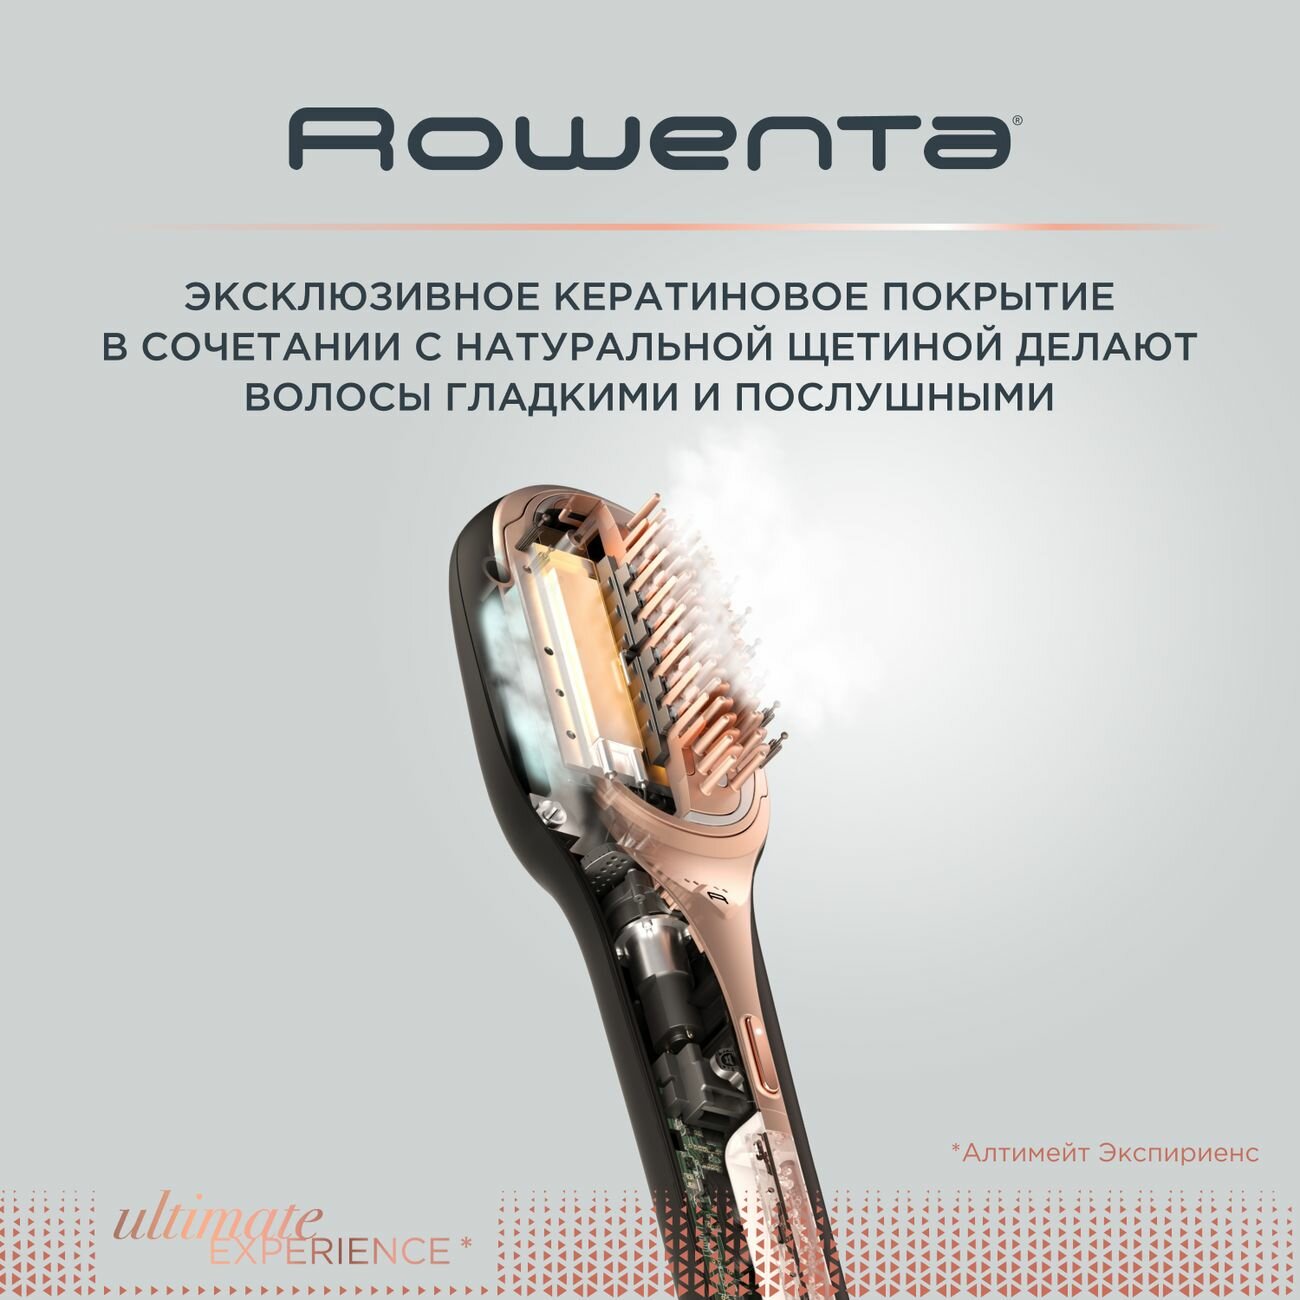 Устройство для восстановления волос Rowenta - фото №11